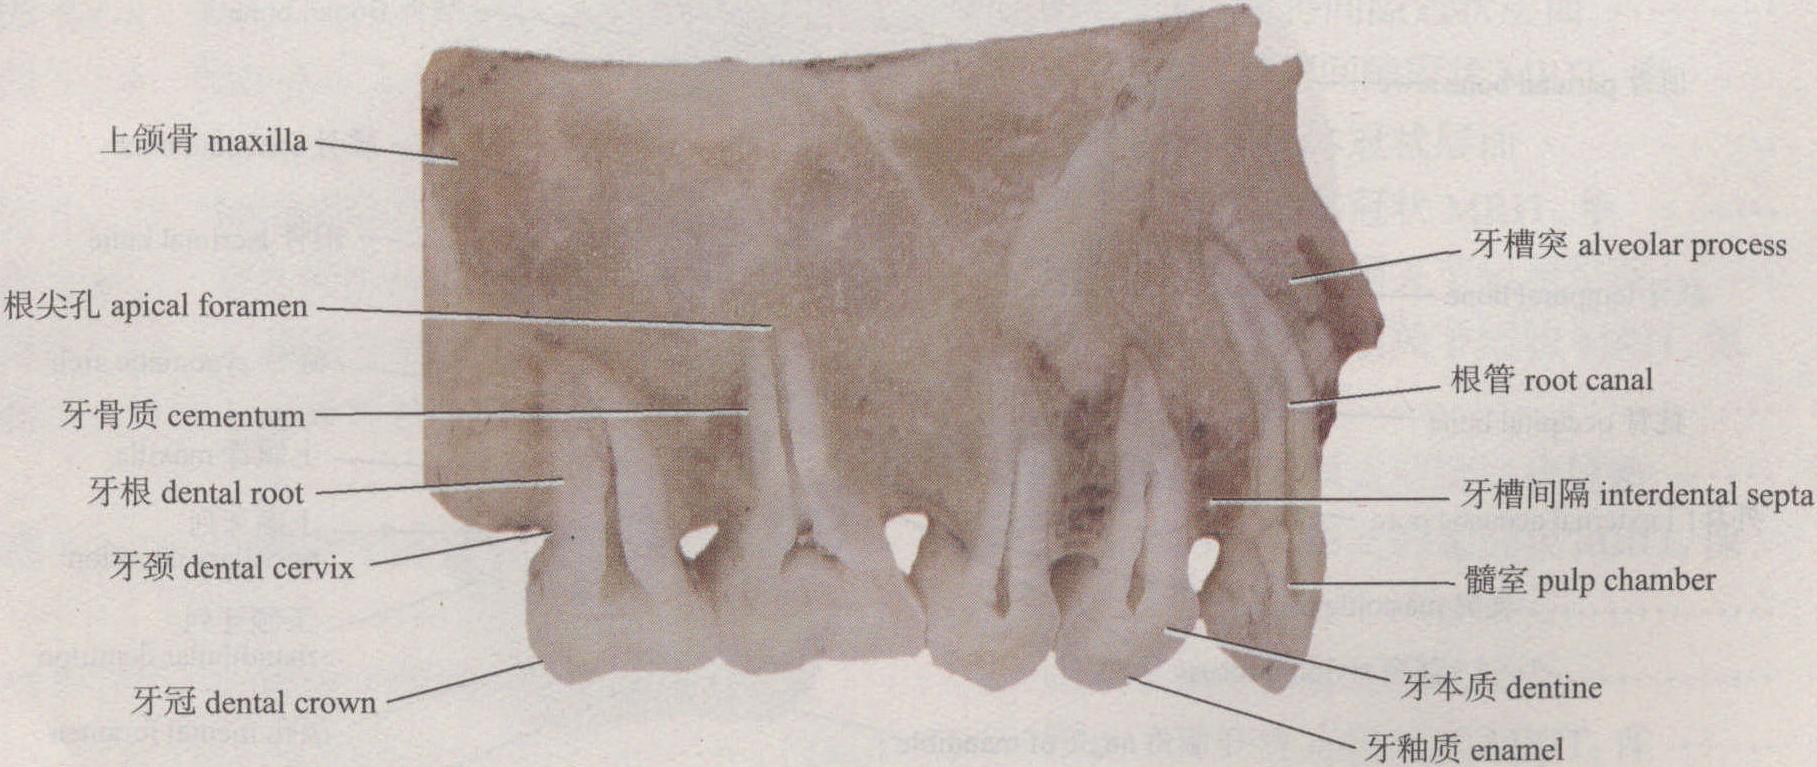 图1-1-5 牙的结构